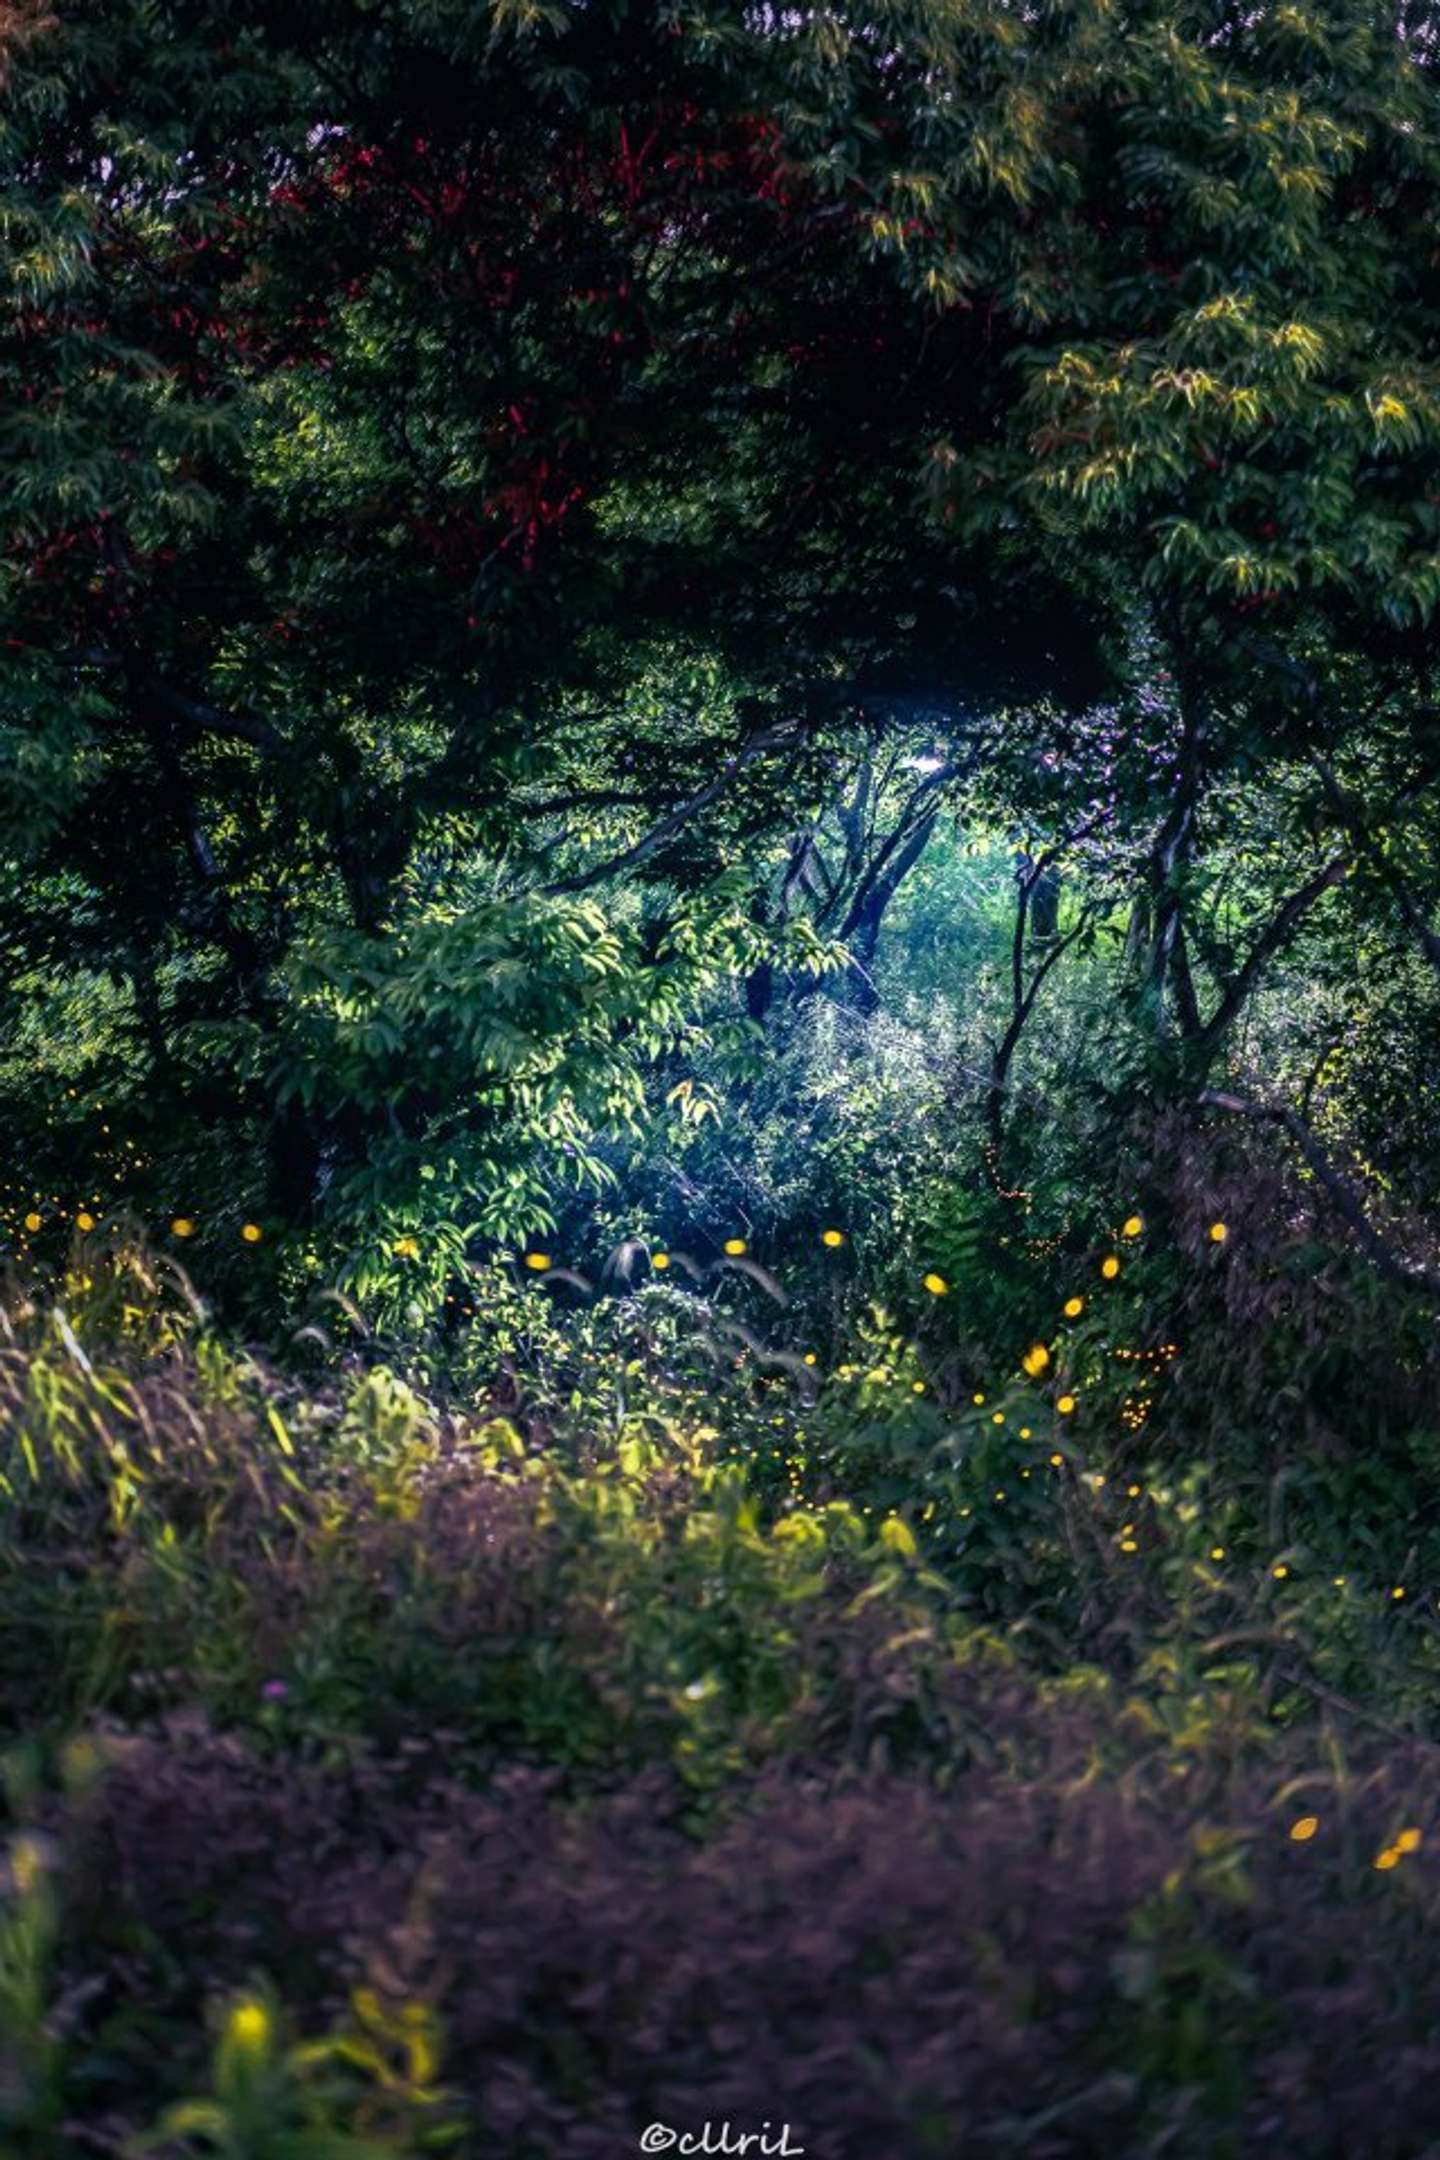 妖精の国への入り口かな ホタル舞う森で たまたま撮れた1枚 がとっても幻想的 22年6月12日 エキサイトニュース